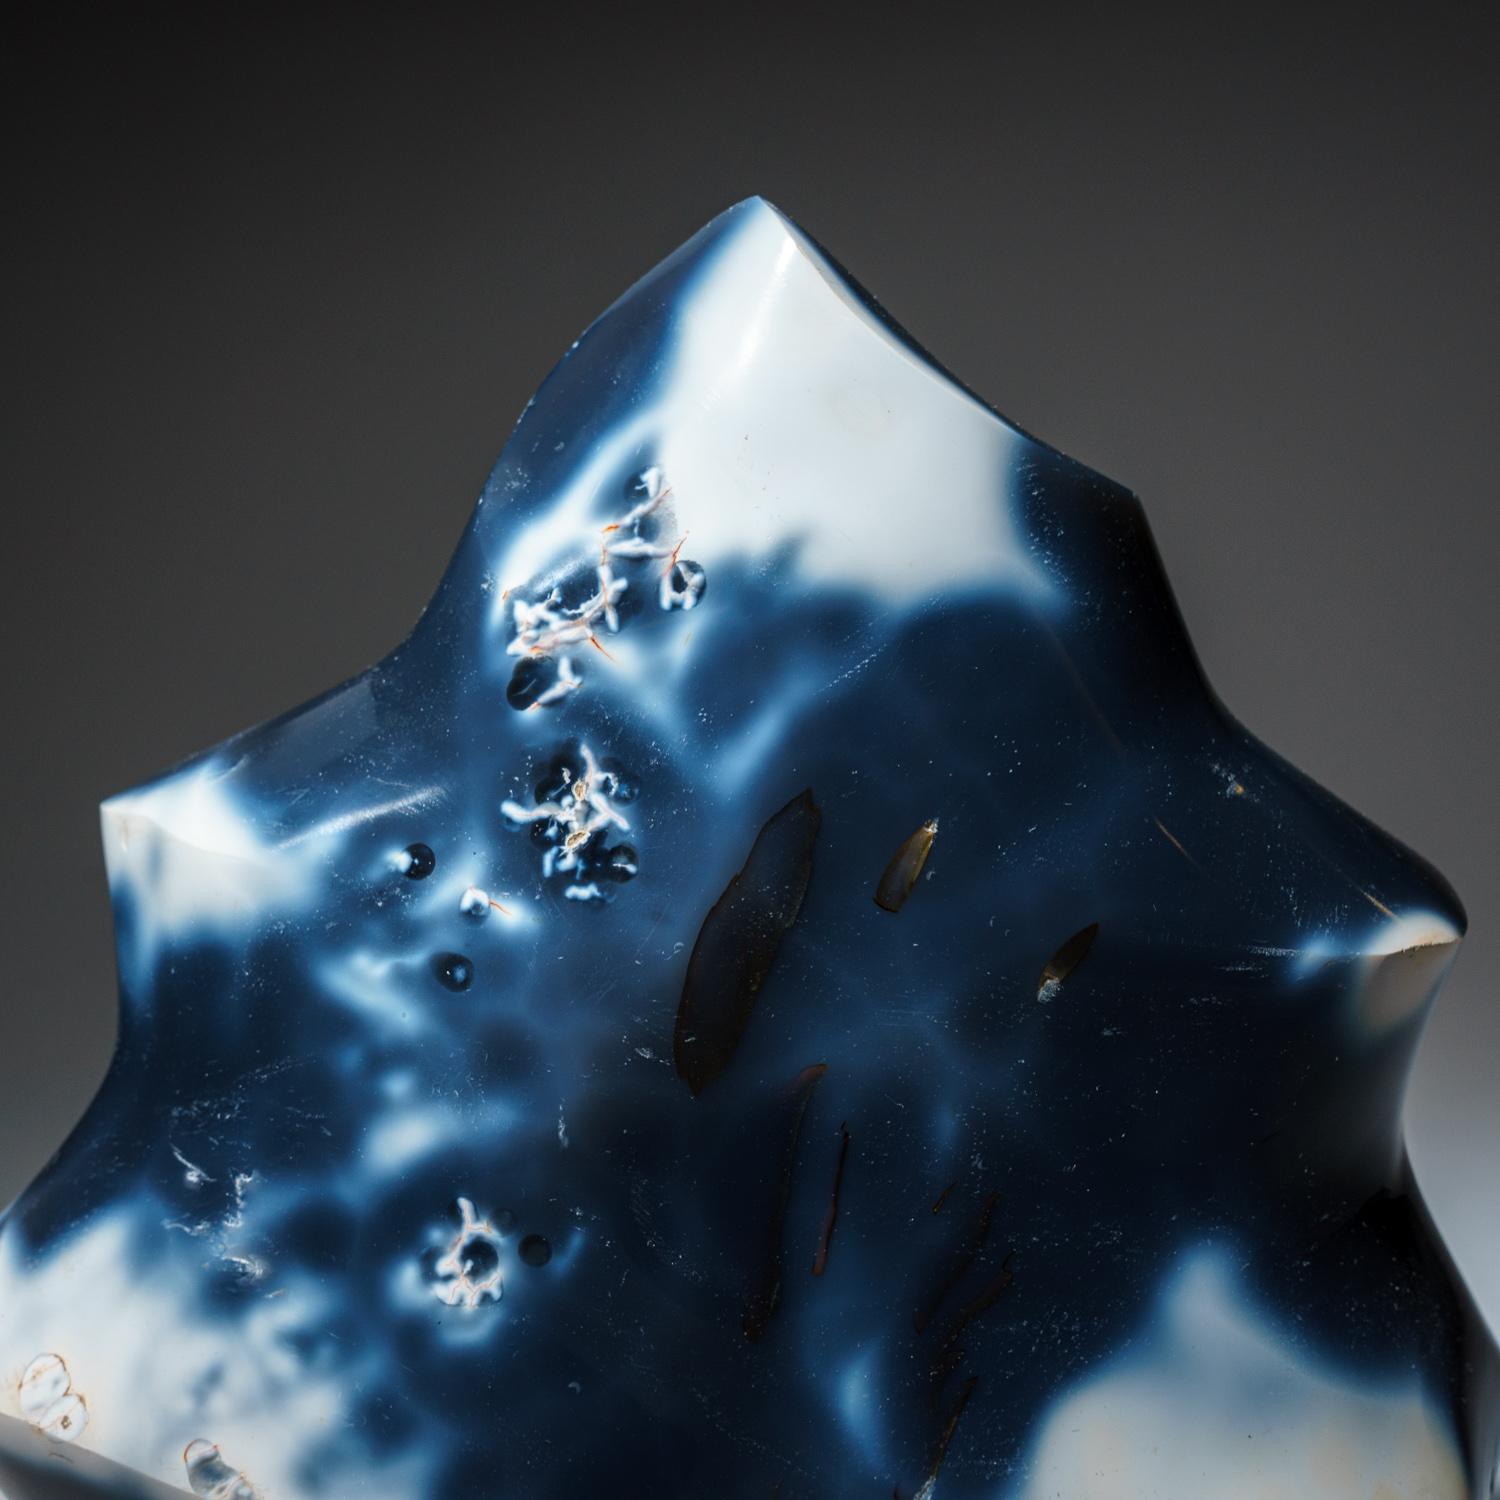 Agate calcédoine bleue de qualité AAA de Madagascar, également connue sous le nom de pierre d'orque, avec des motifs de couleur allant du blanc au gris, du gris-bleu au presque noir, polie à la main jusqu'à une finition miroir lisse. La calcédoine